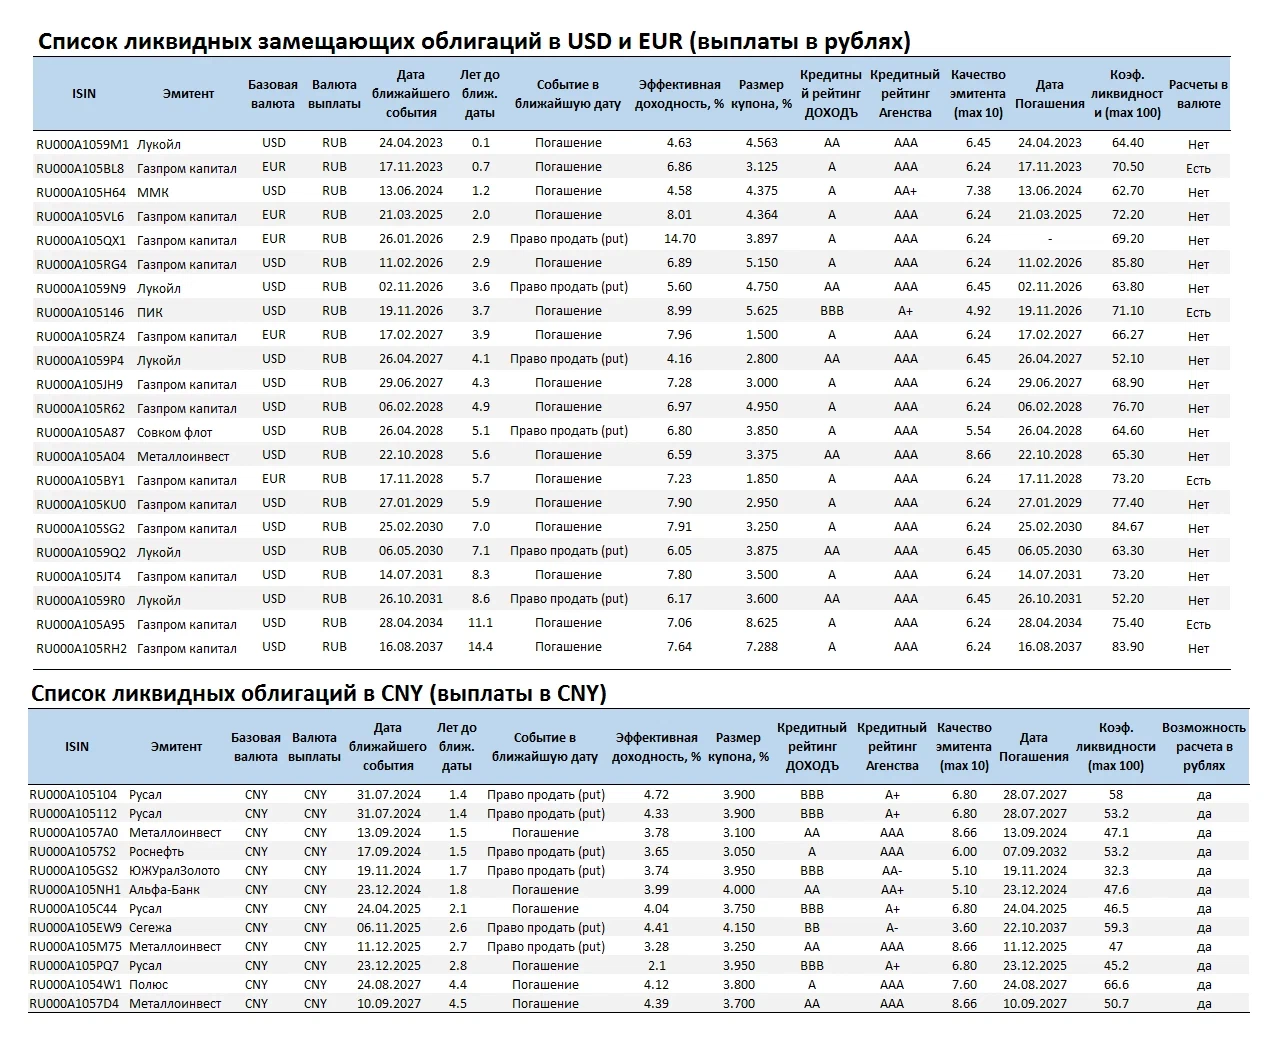 Список ликвидных замещающих облигаций в USD и EUR